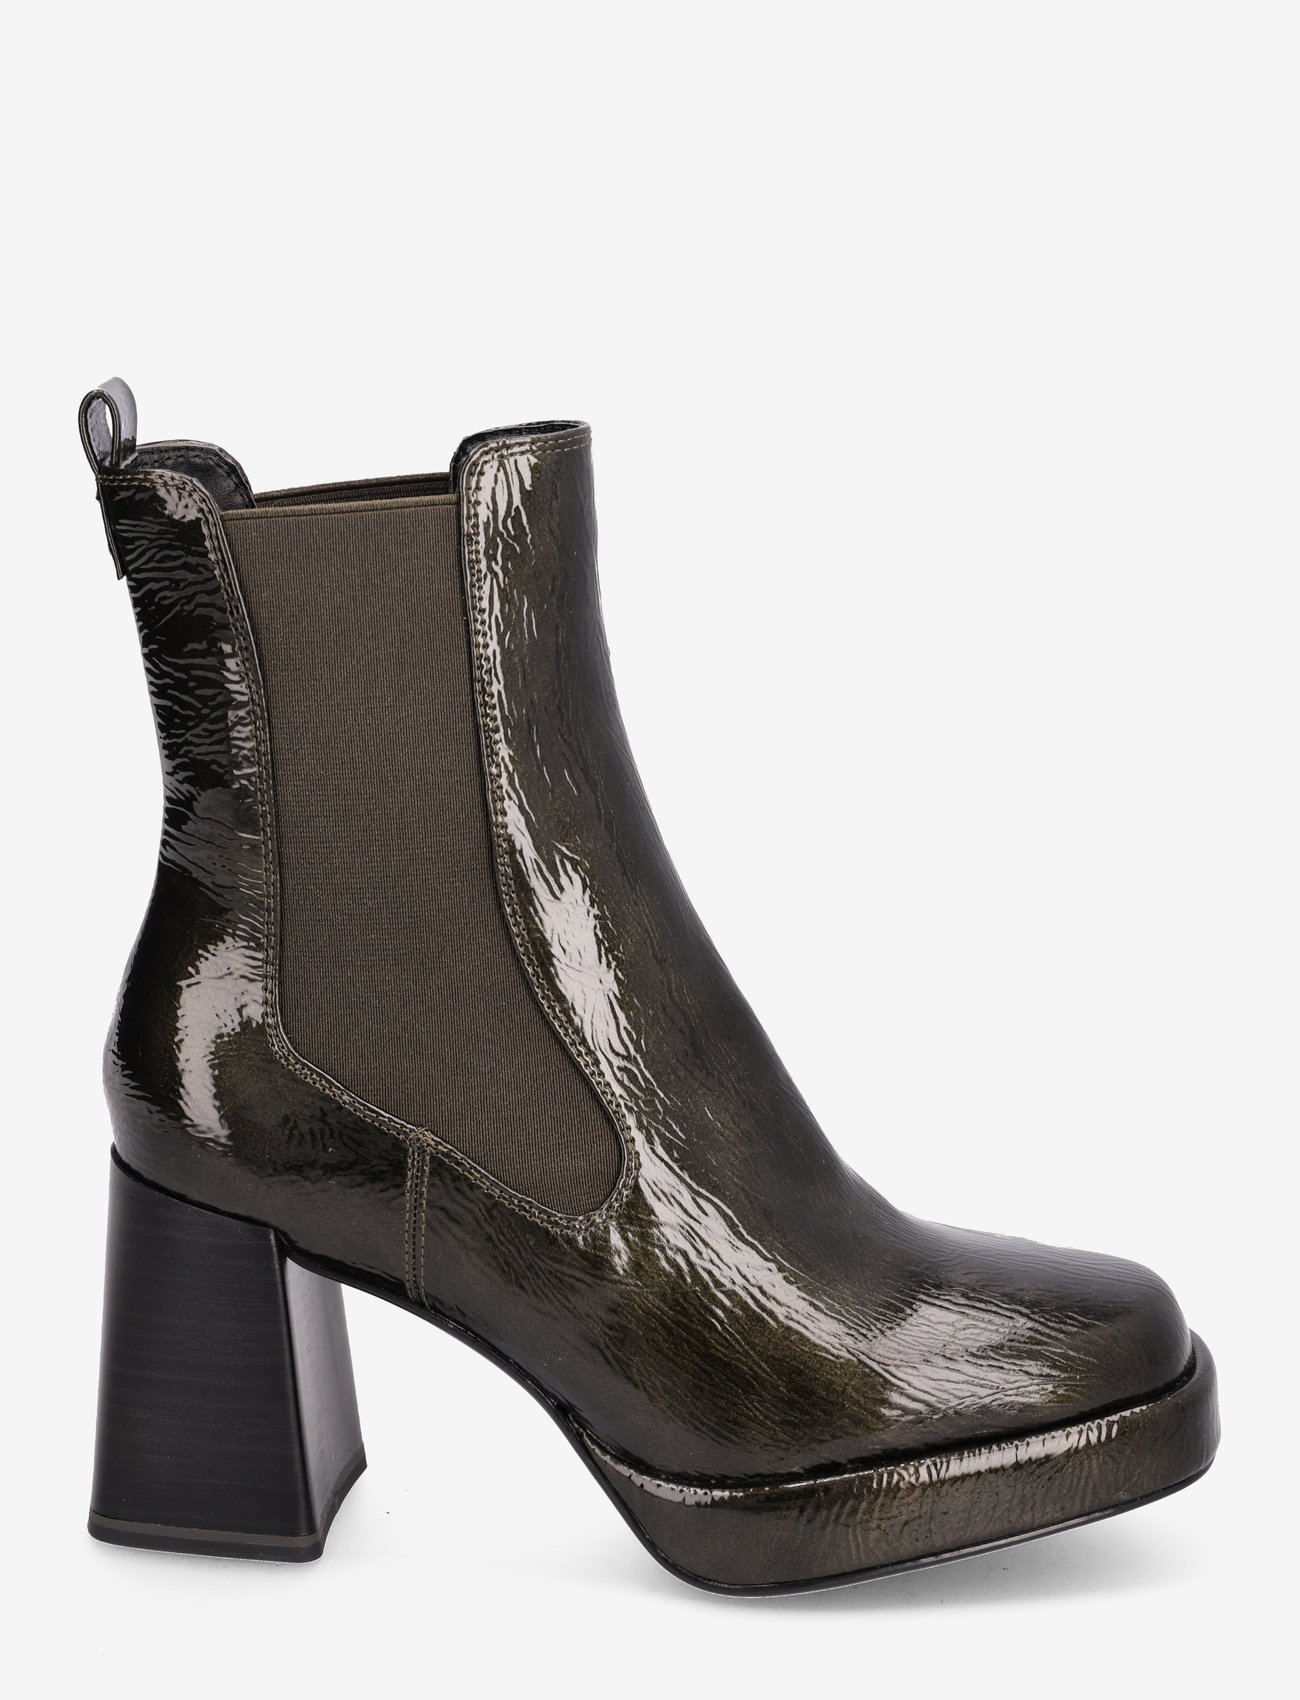 Tamaris - Women Boots - high heel - olive - 1